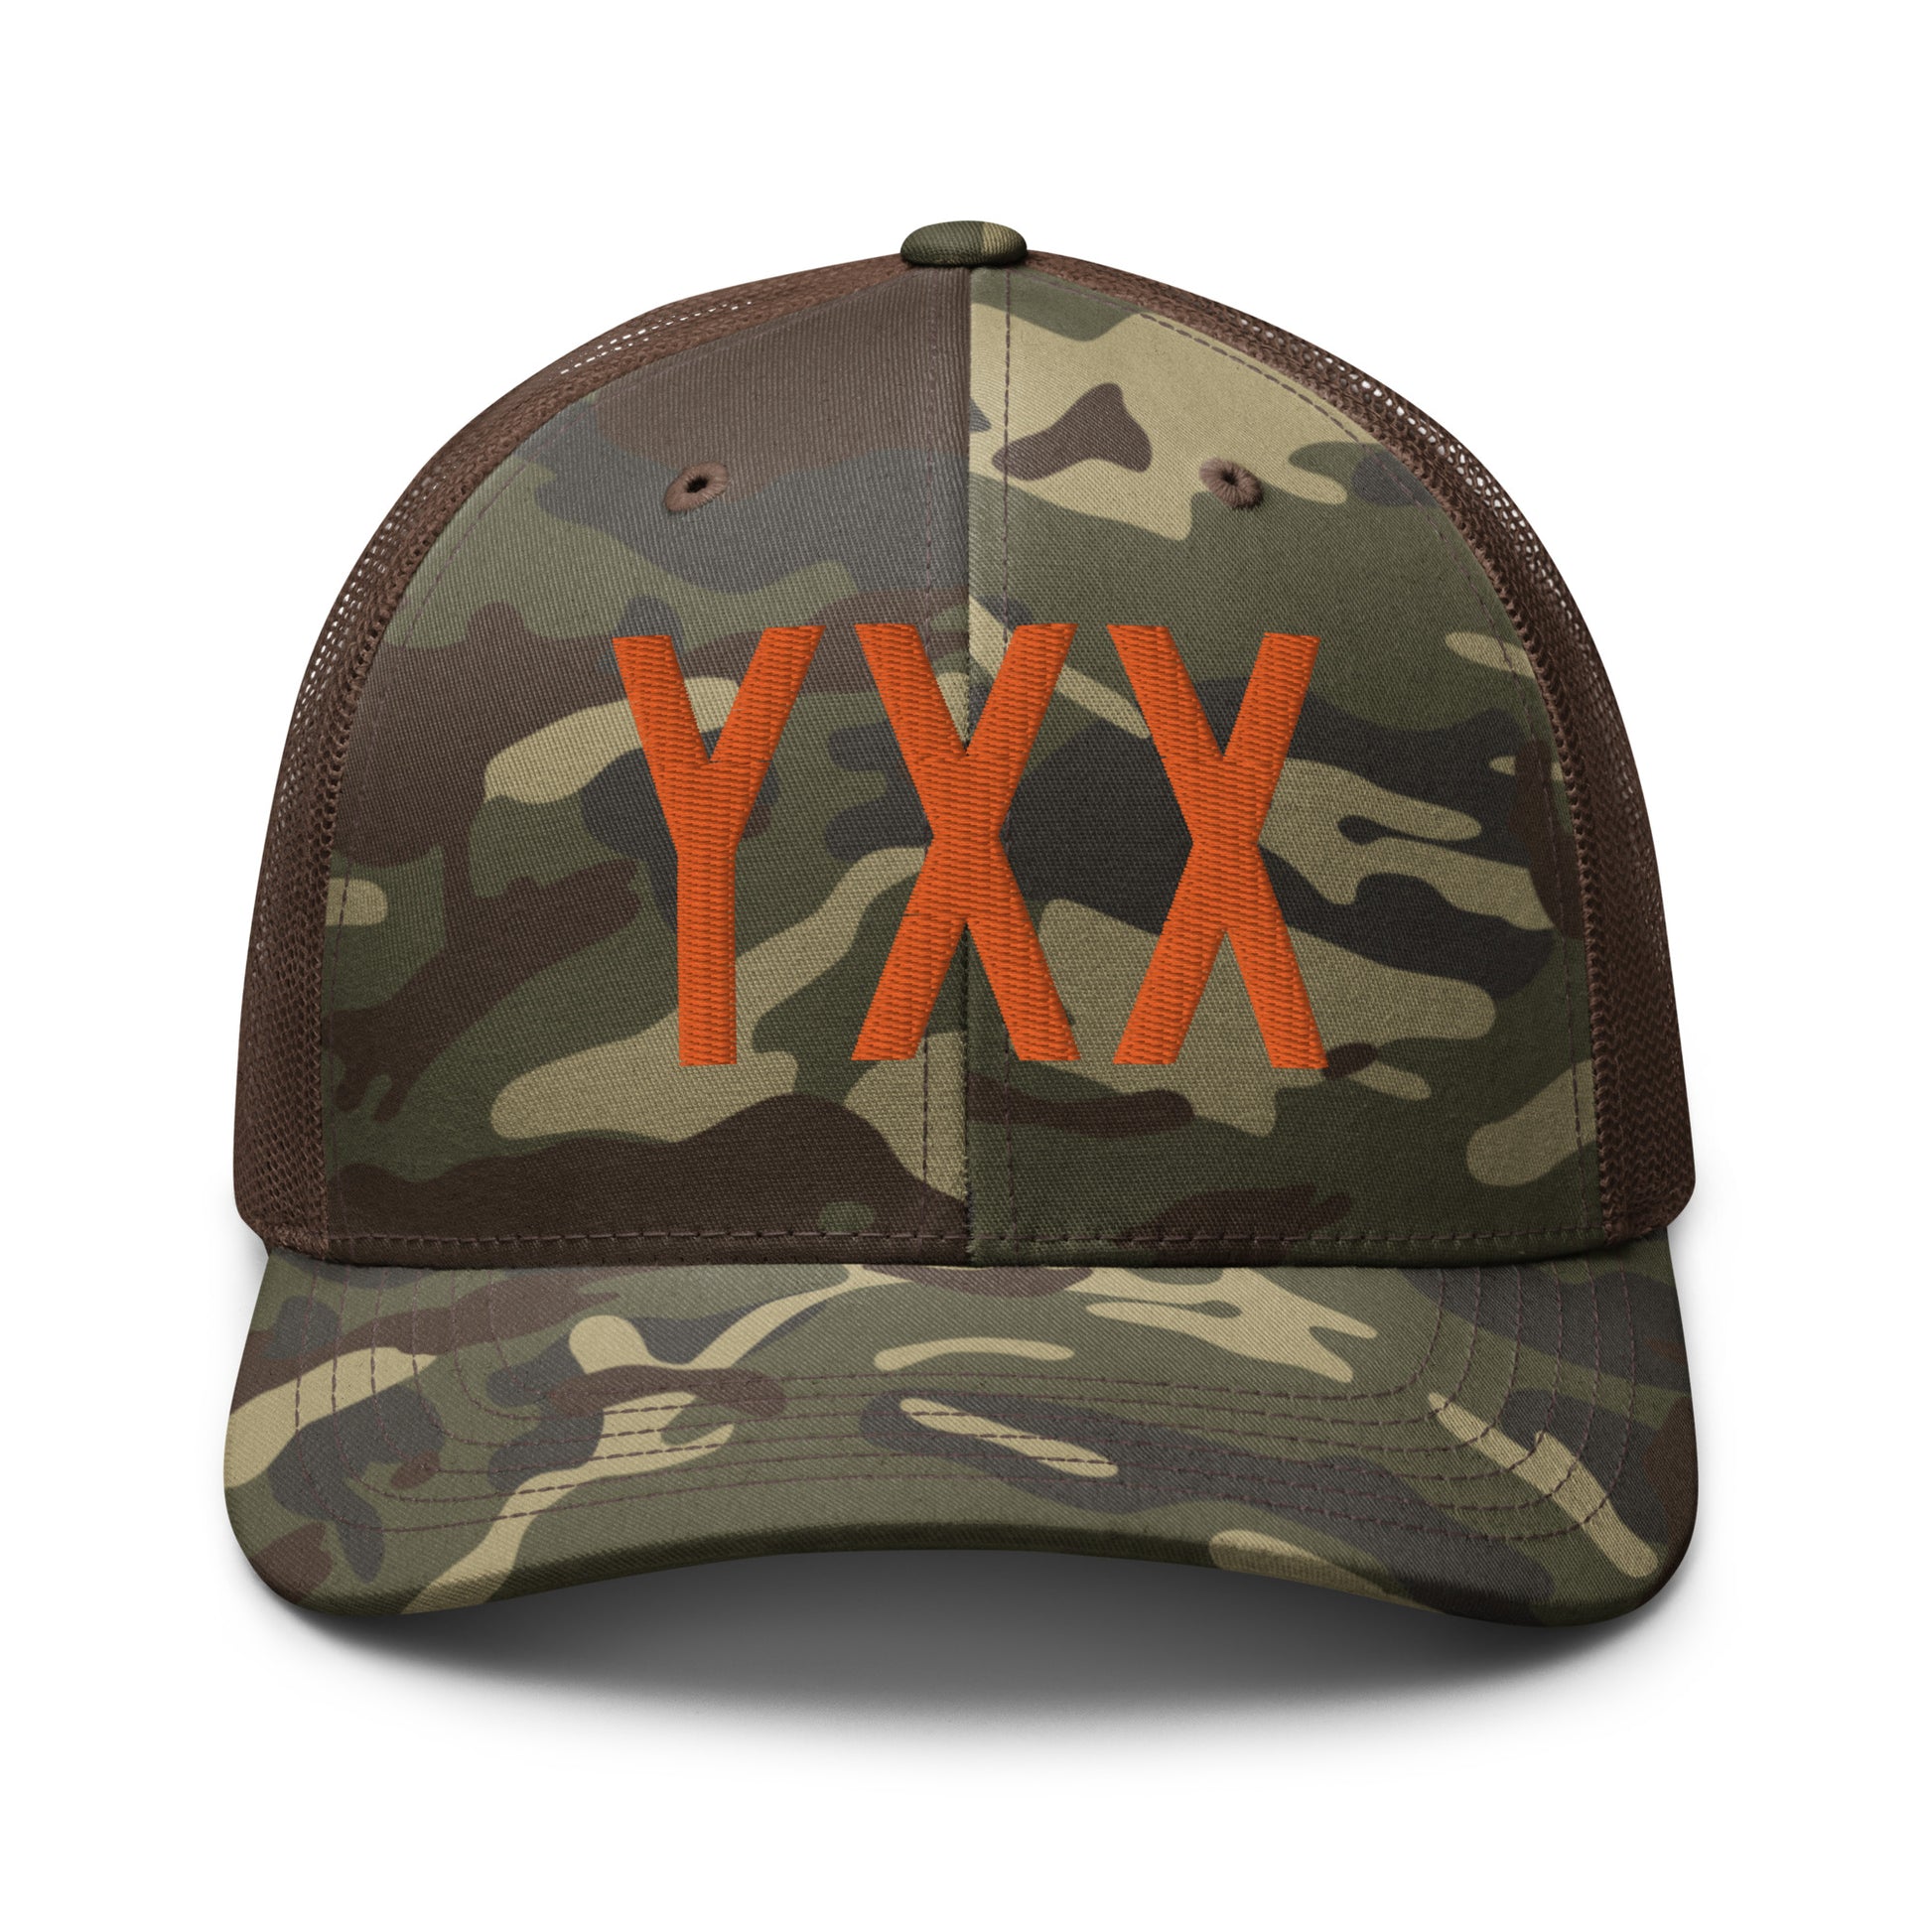 Airport Code Camouflage Trucker Hat - Orange • YXX Abbotsford • YHM Designs - Image 13